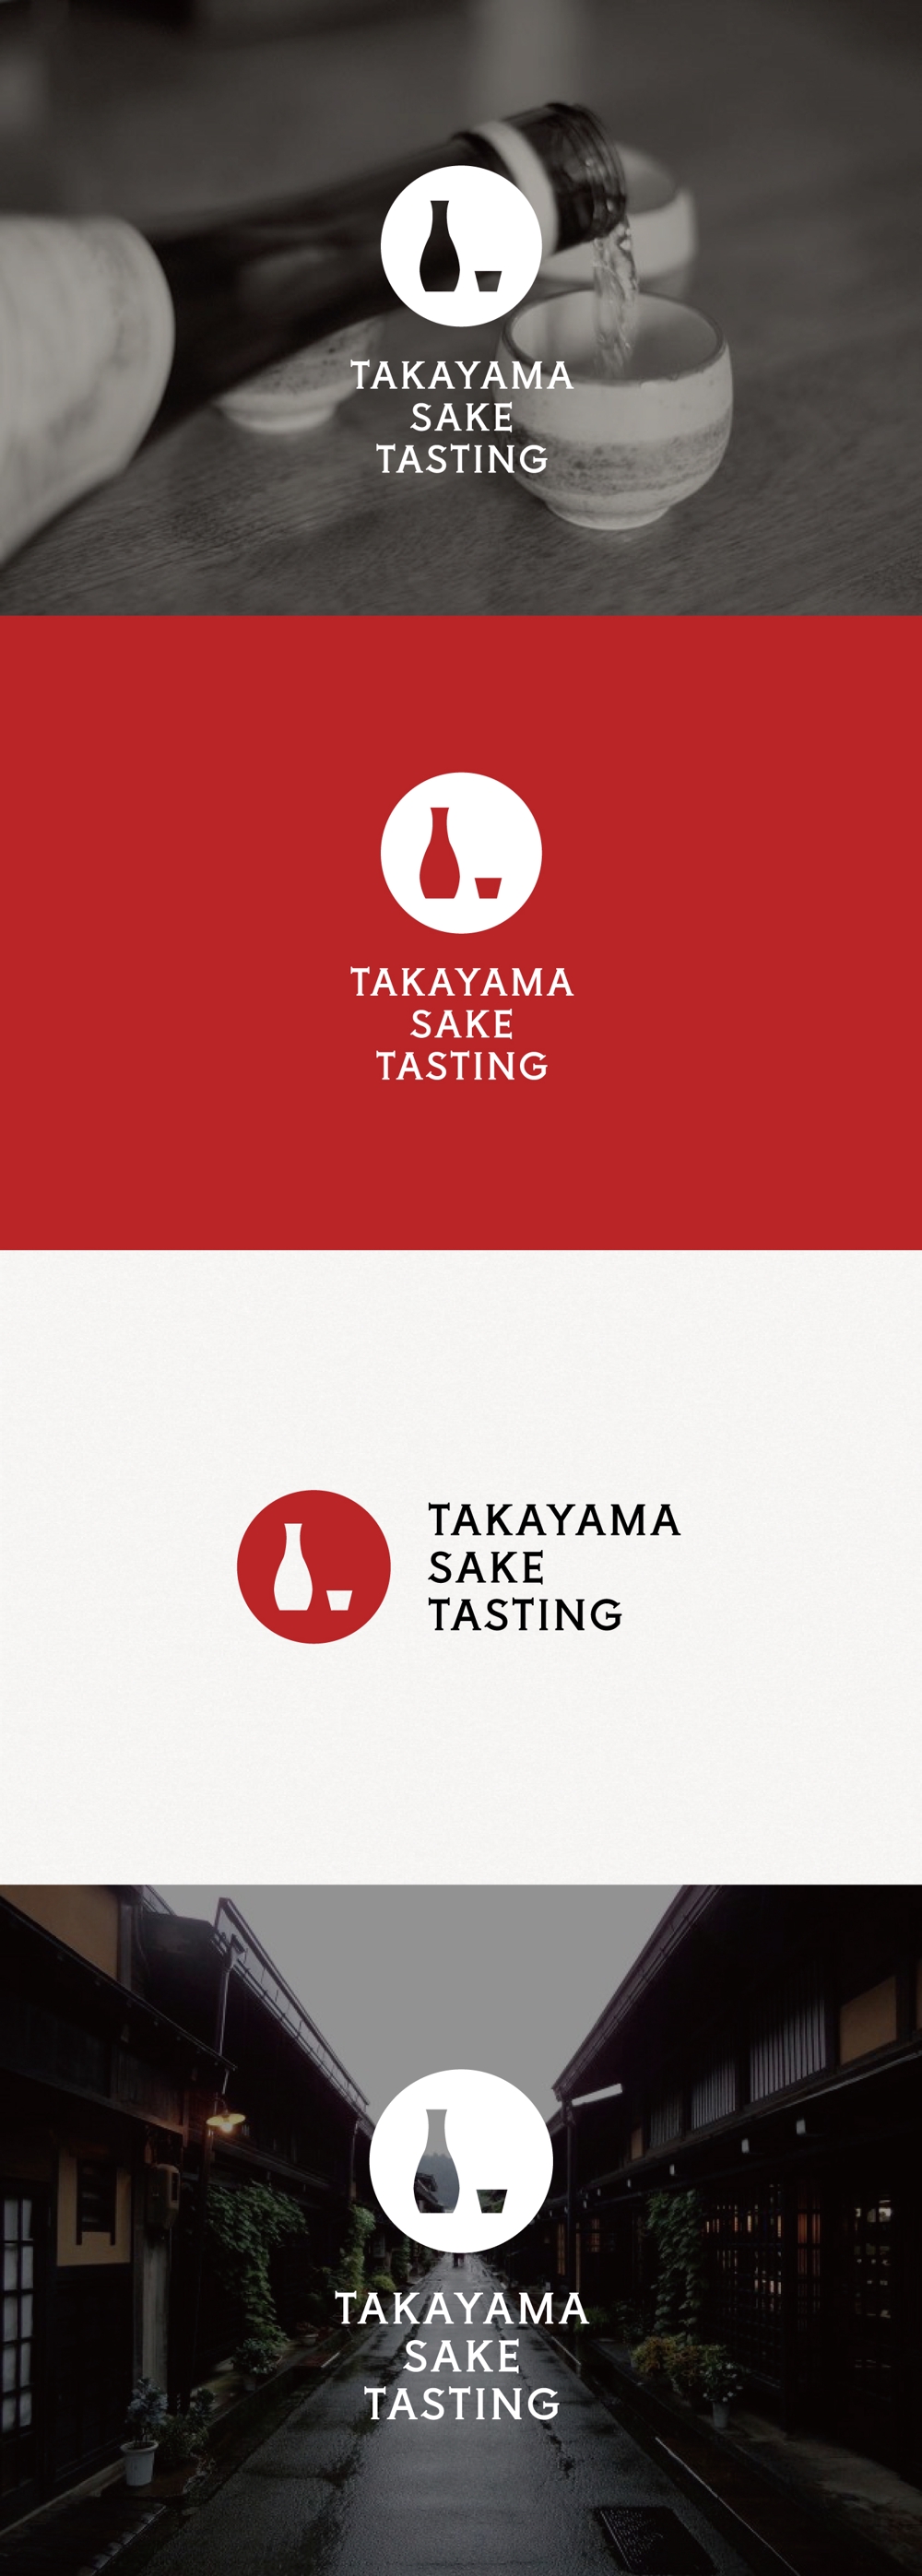 外国人向けツアー『TAKAYAMA SAKE TASTING』のロゴ